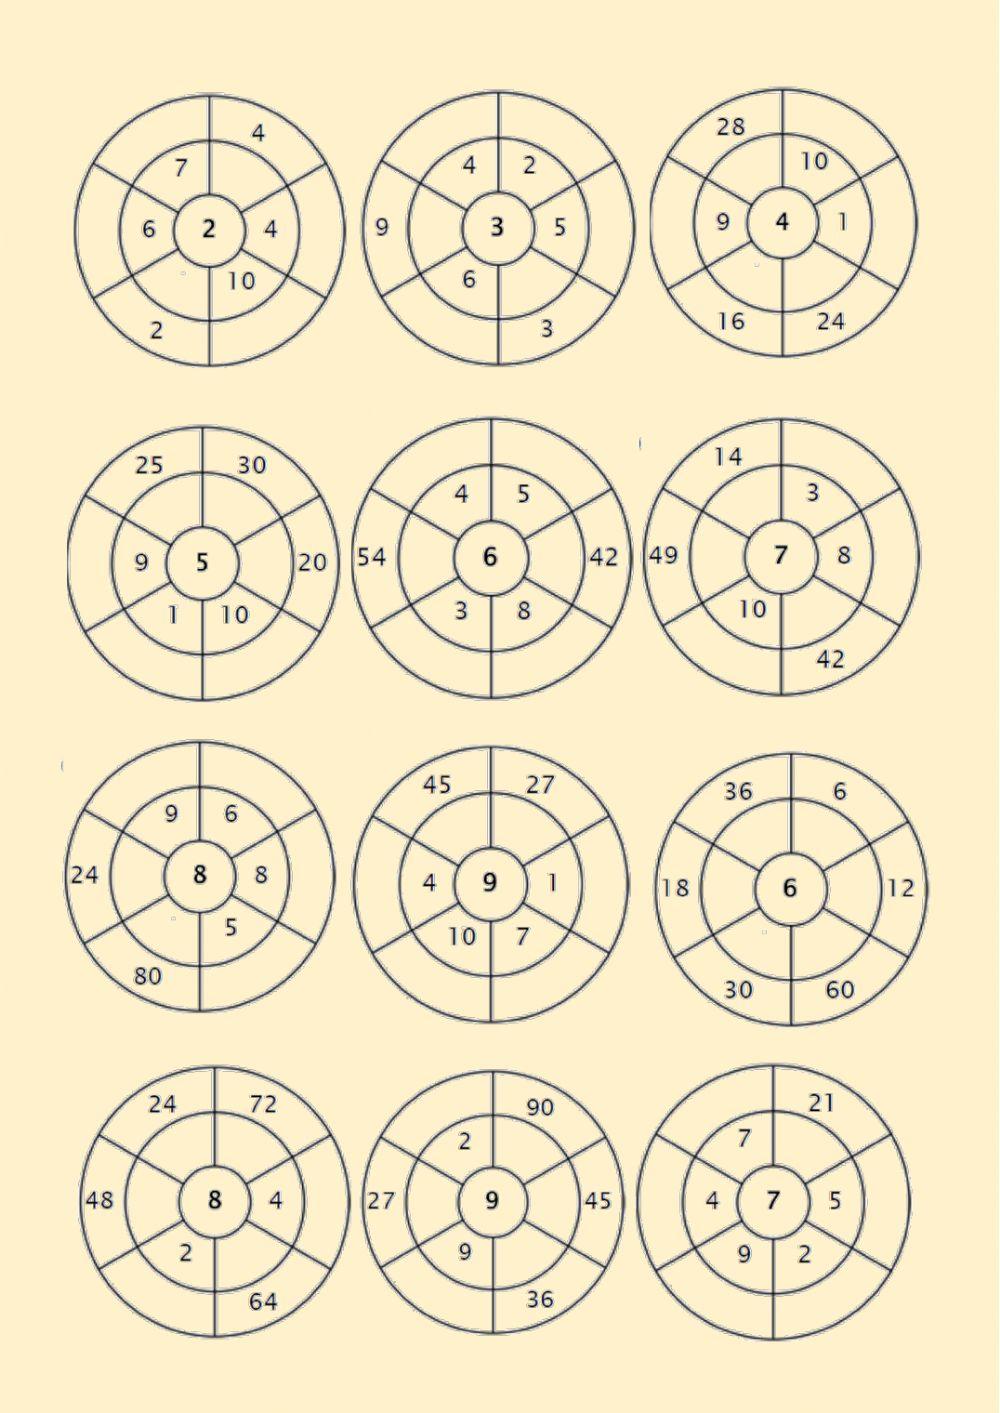 Tablas en círculos